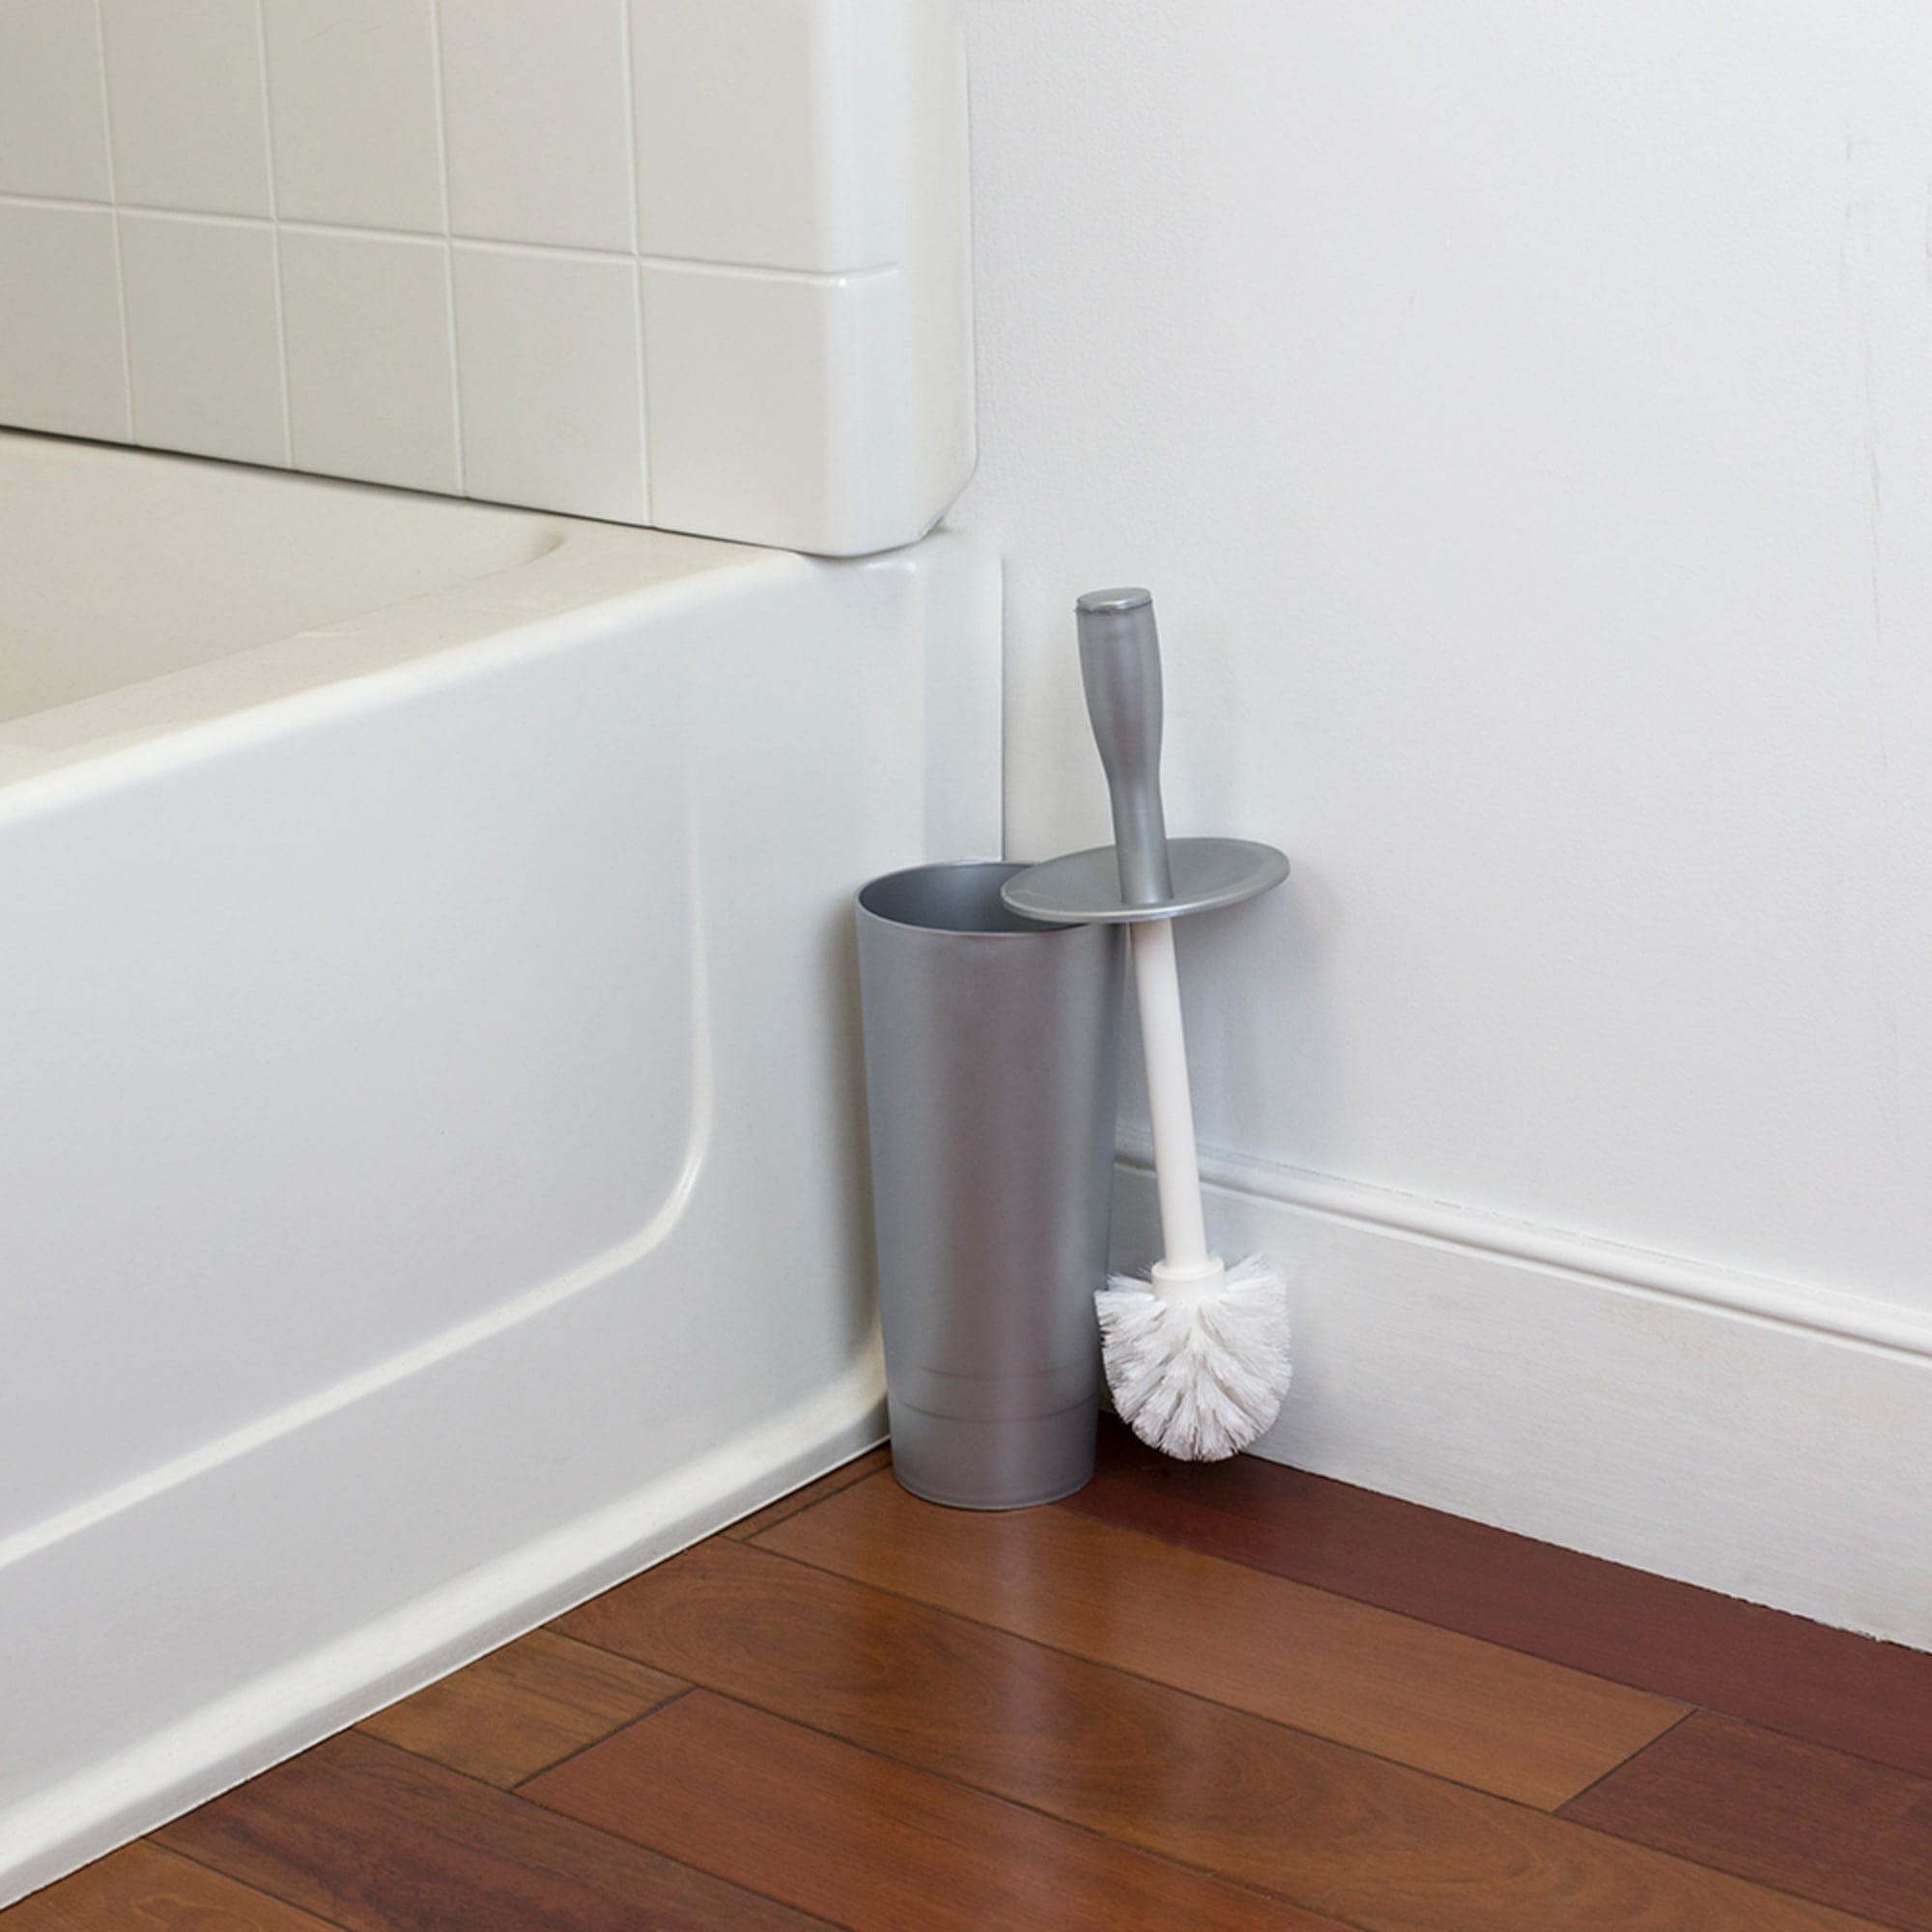 Home Basics Plastic Toilet Brush Holder, Grey $6.00 EACH, CASE PACK OF 12